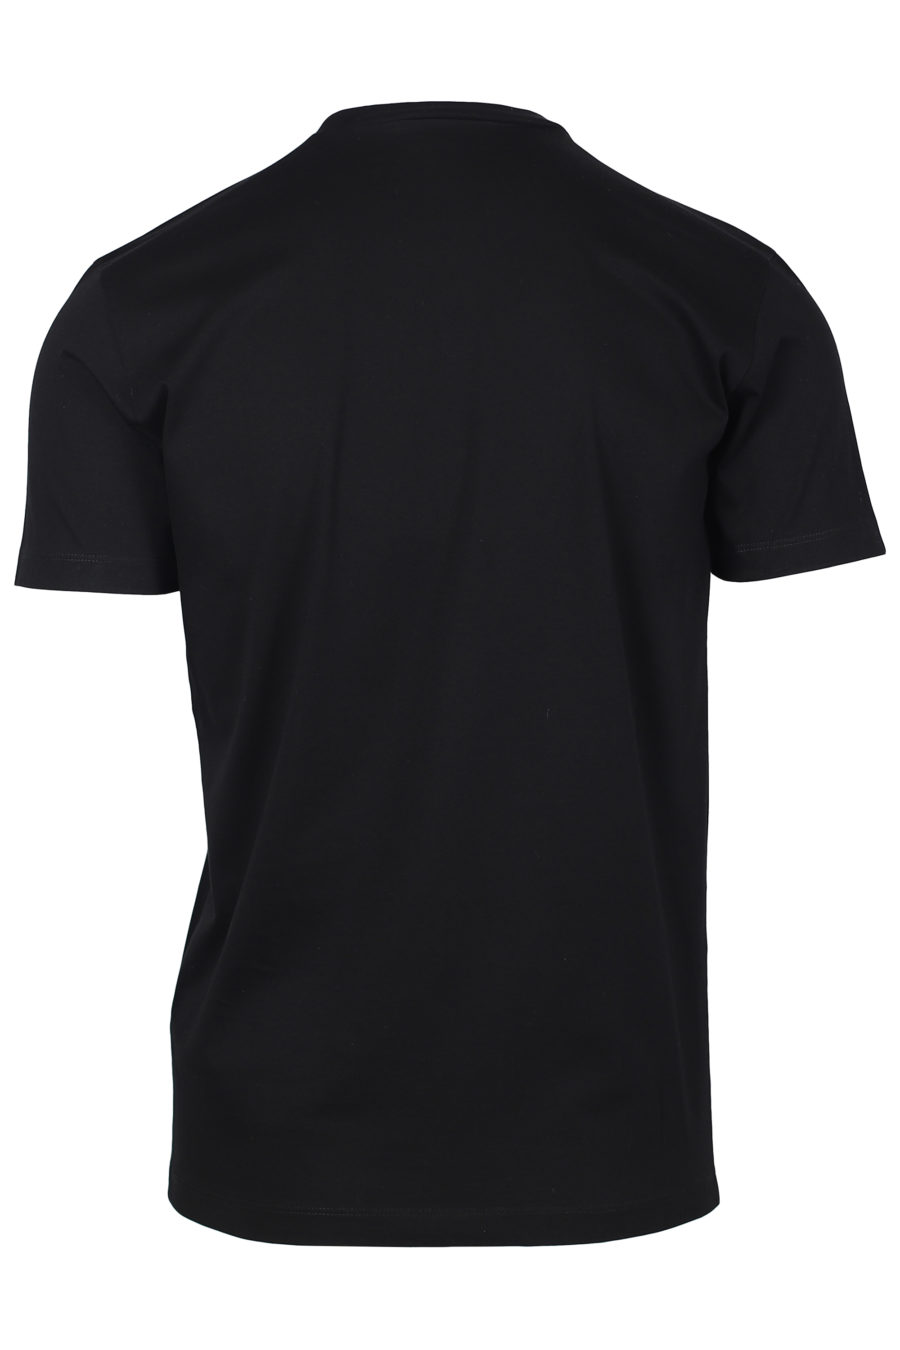 Camiseta negra con logo "Doodle Face" - IMG 2254 1